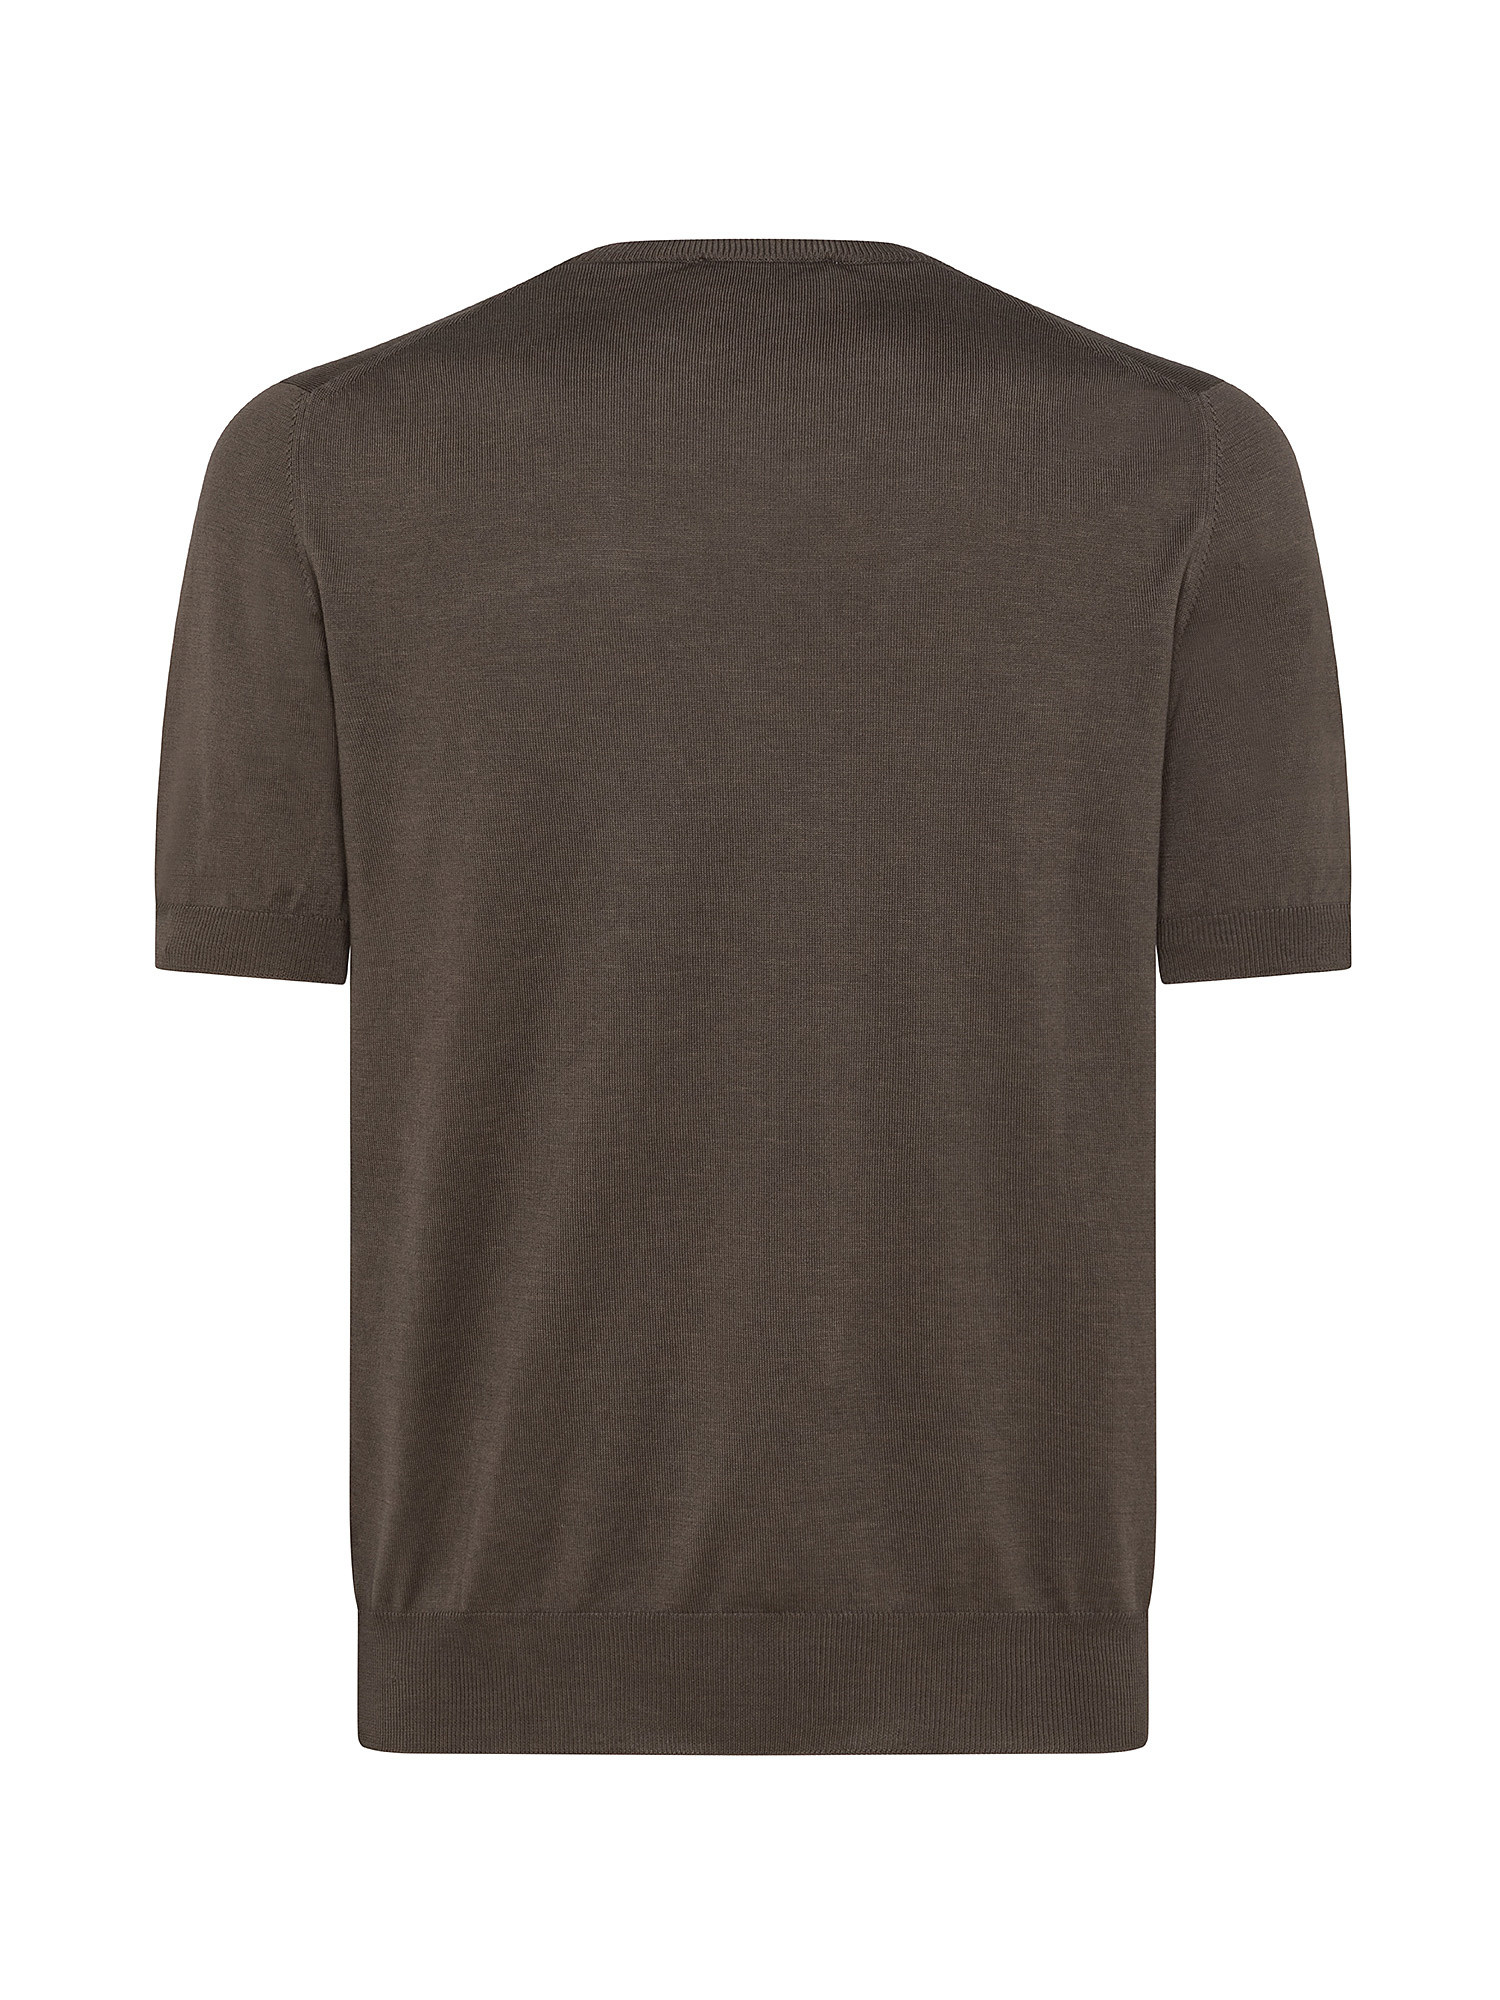 T-shirt in maglia a maniche corte in sottile cotone organico biologico effetto Vintage, Marrone, large